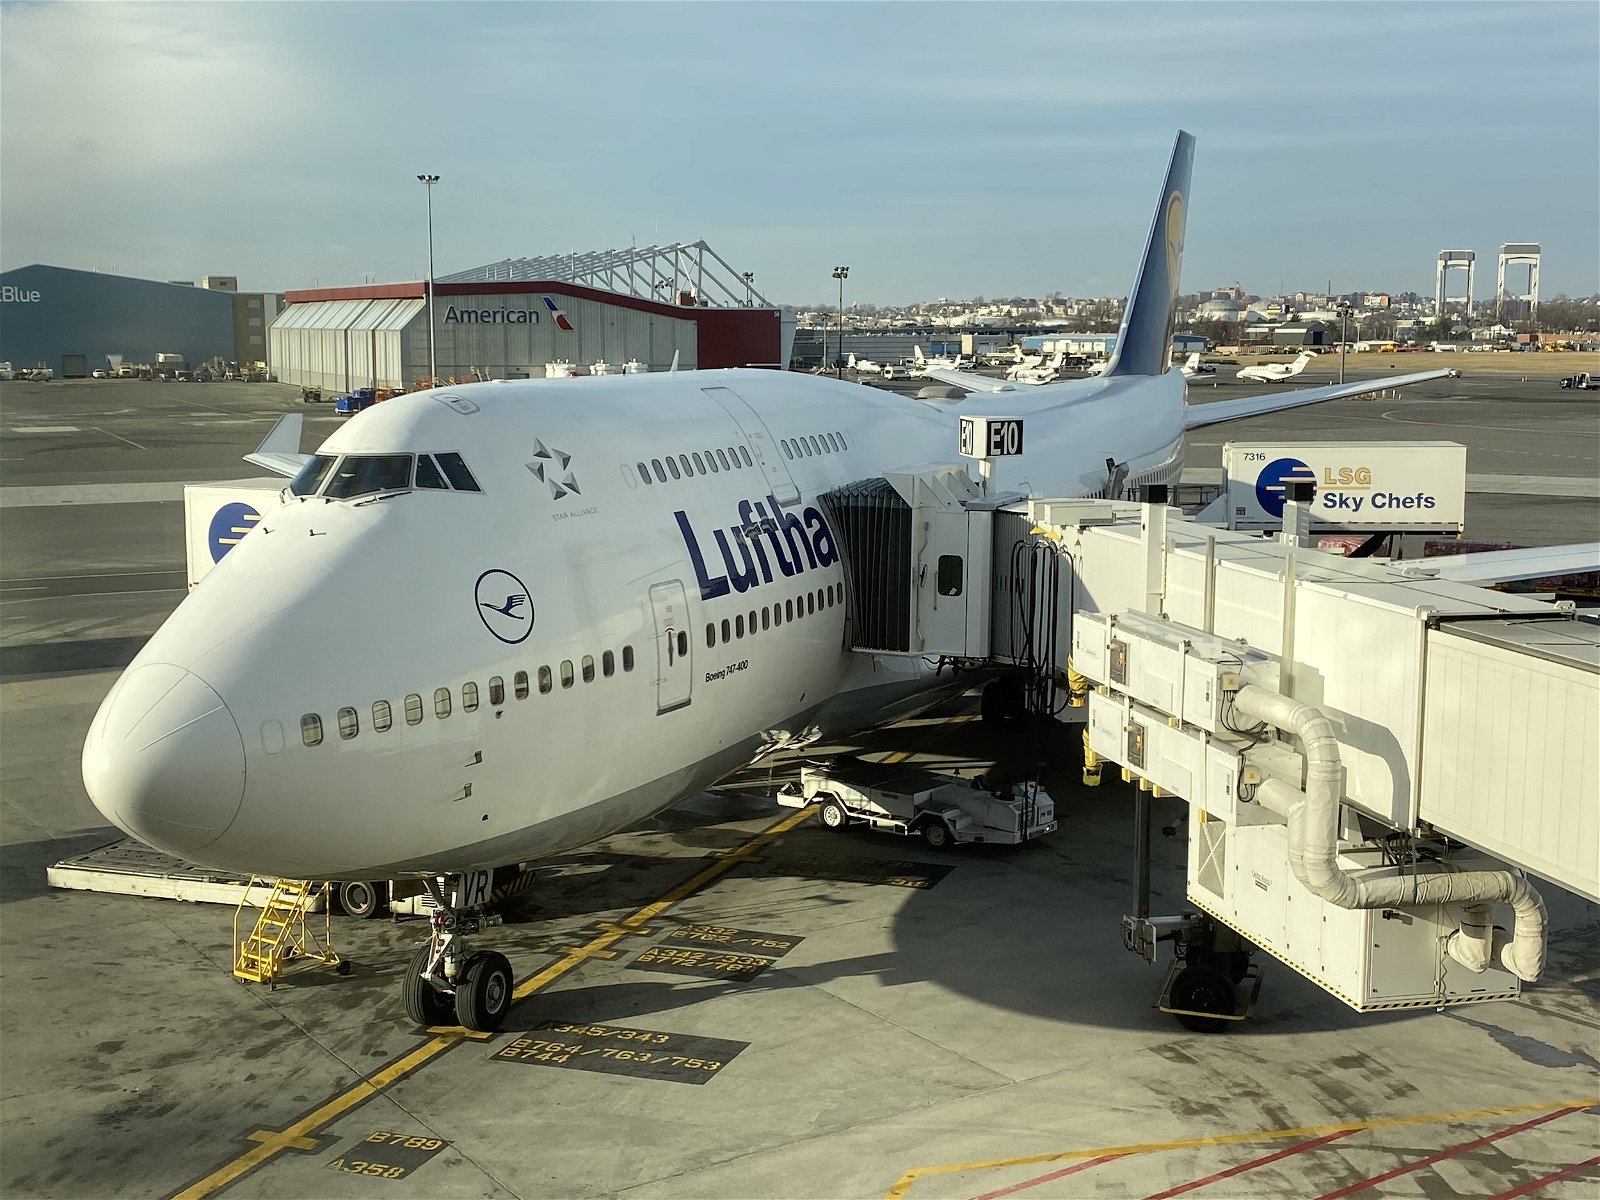 Condor Economy Class Review: DE2016 Frankfurt Airport (FRA) to New York  City (JFK) (September 2023) — The Interior Review